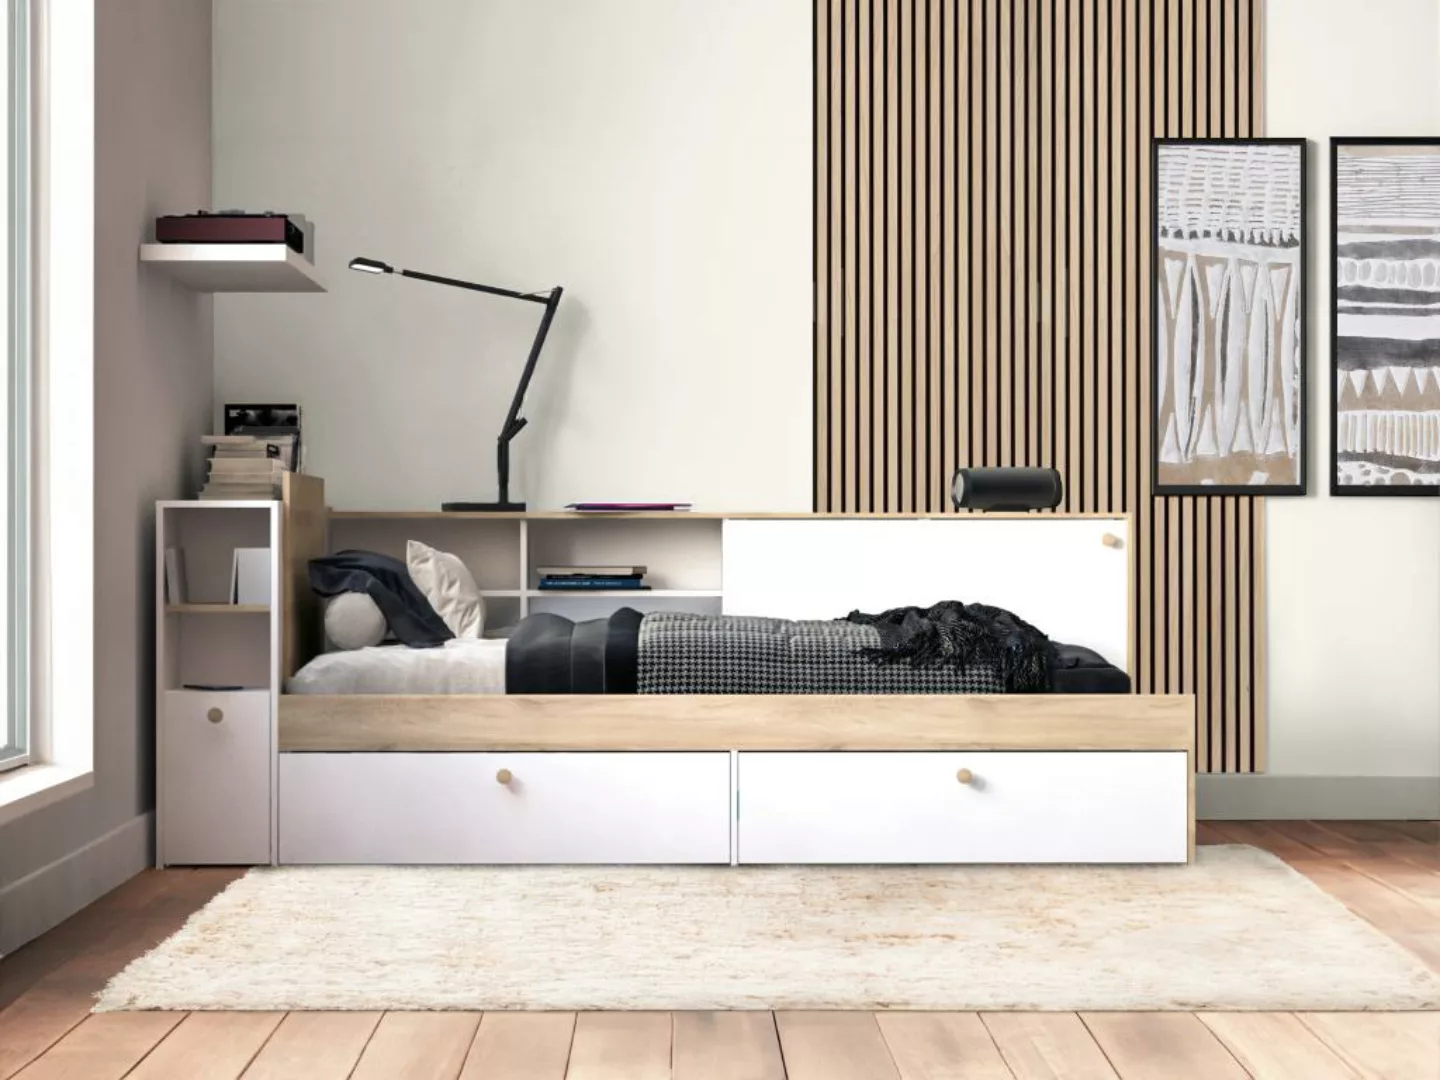 Kombi-Bett mit Stauraum - 90 x 190/200 cm - Weiß & Holzfarben - LIARA günstig online kaufen